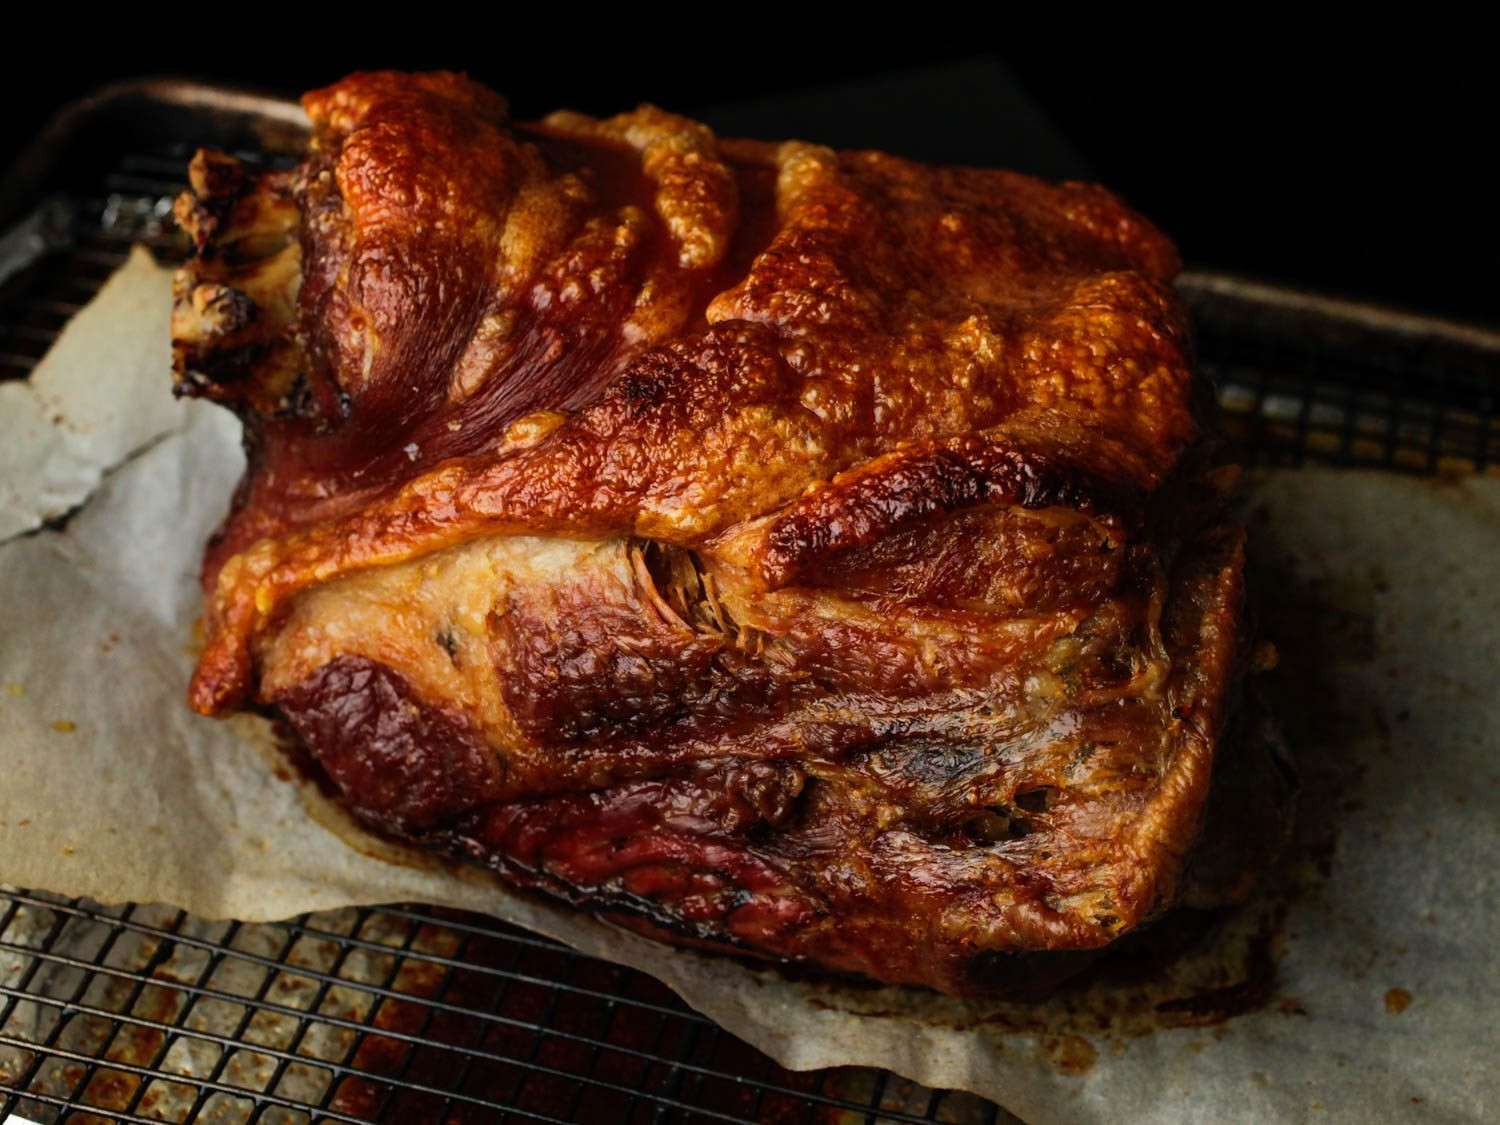 Bbq Pork Shoulder Oven
 Ultra Crispy Slow Roasted Pork Shoulder Recipe